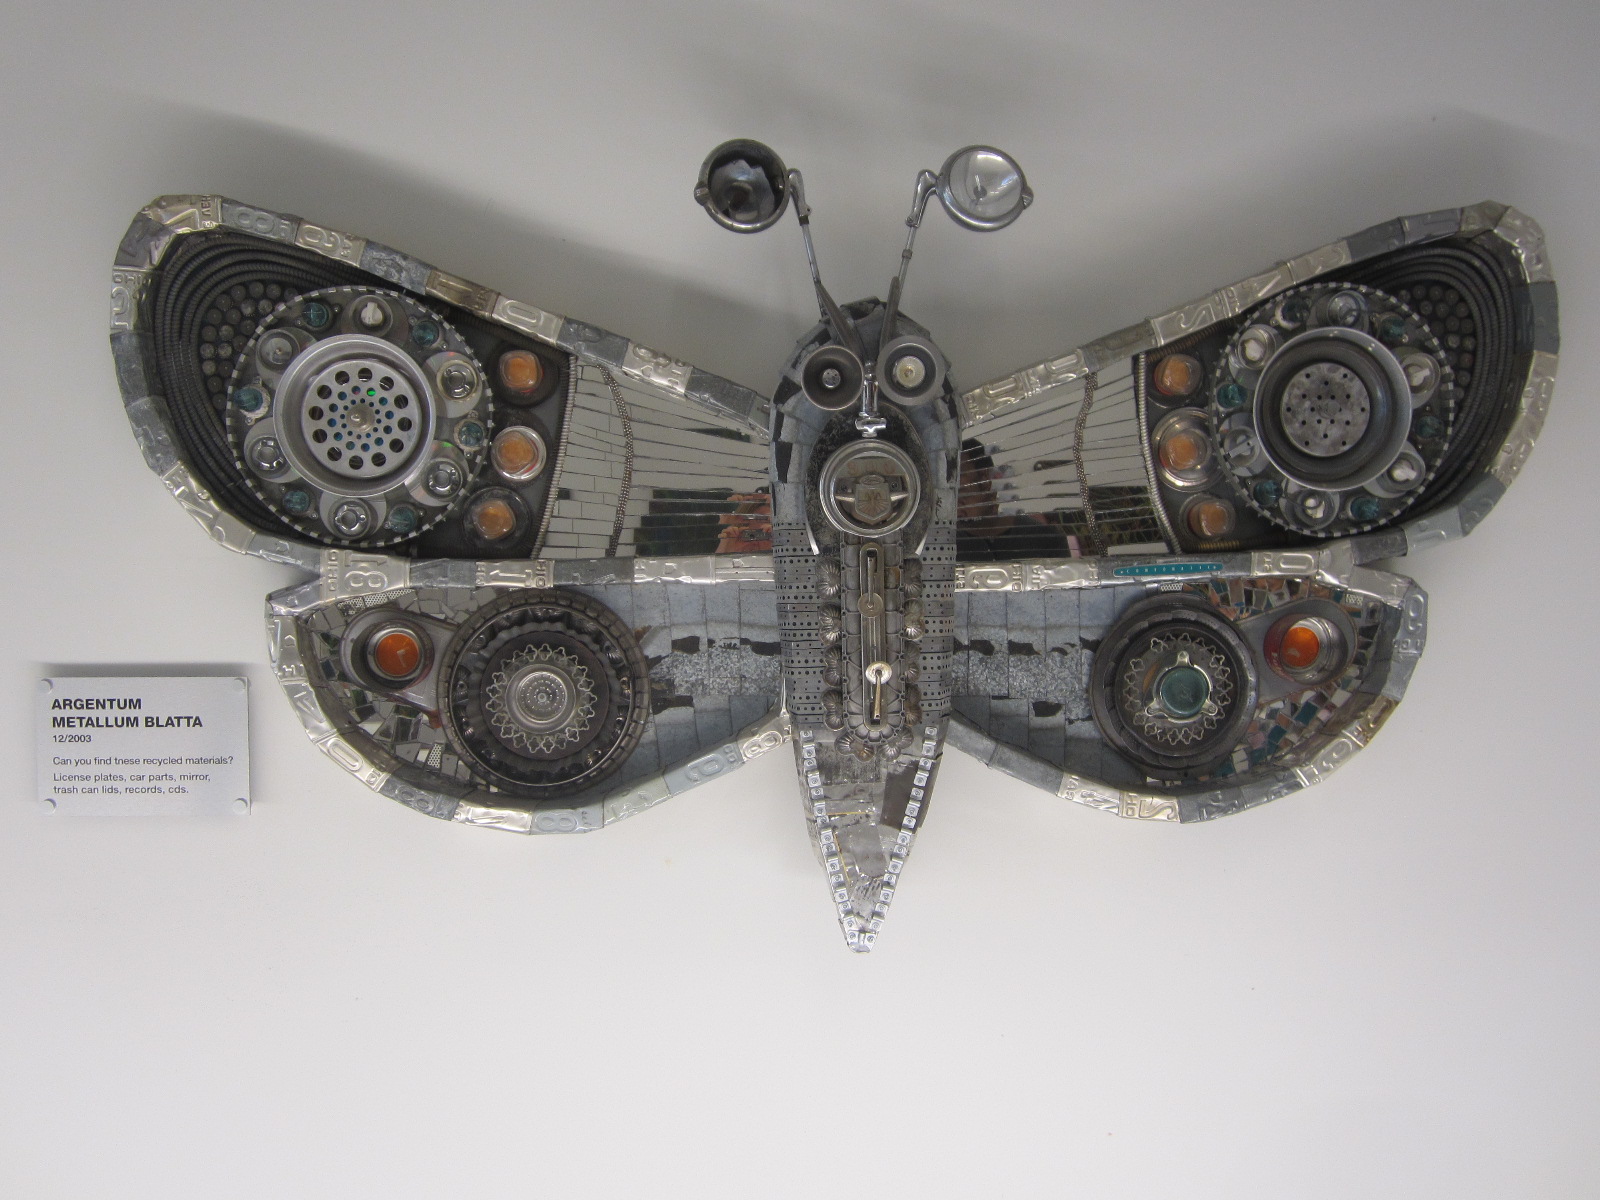 Argentum Metallum Blatta Moth sculpture by Michelle Stitzlein